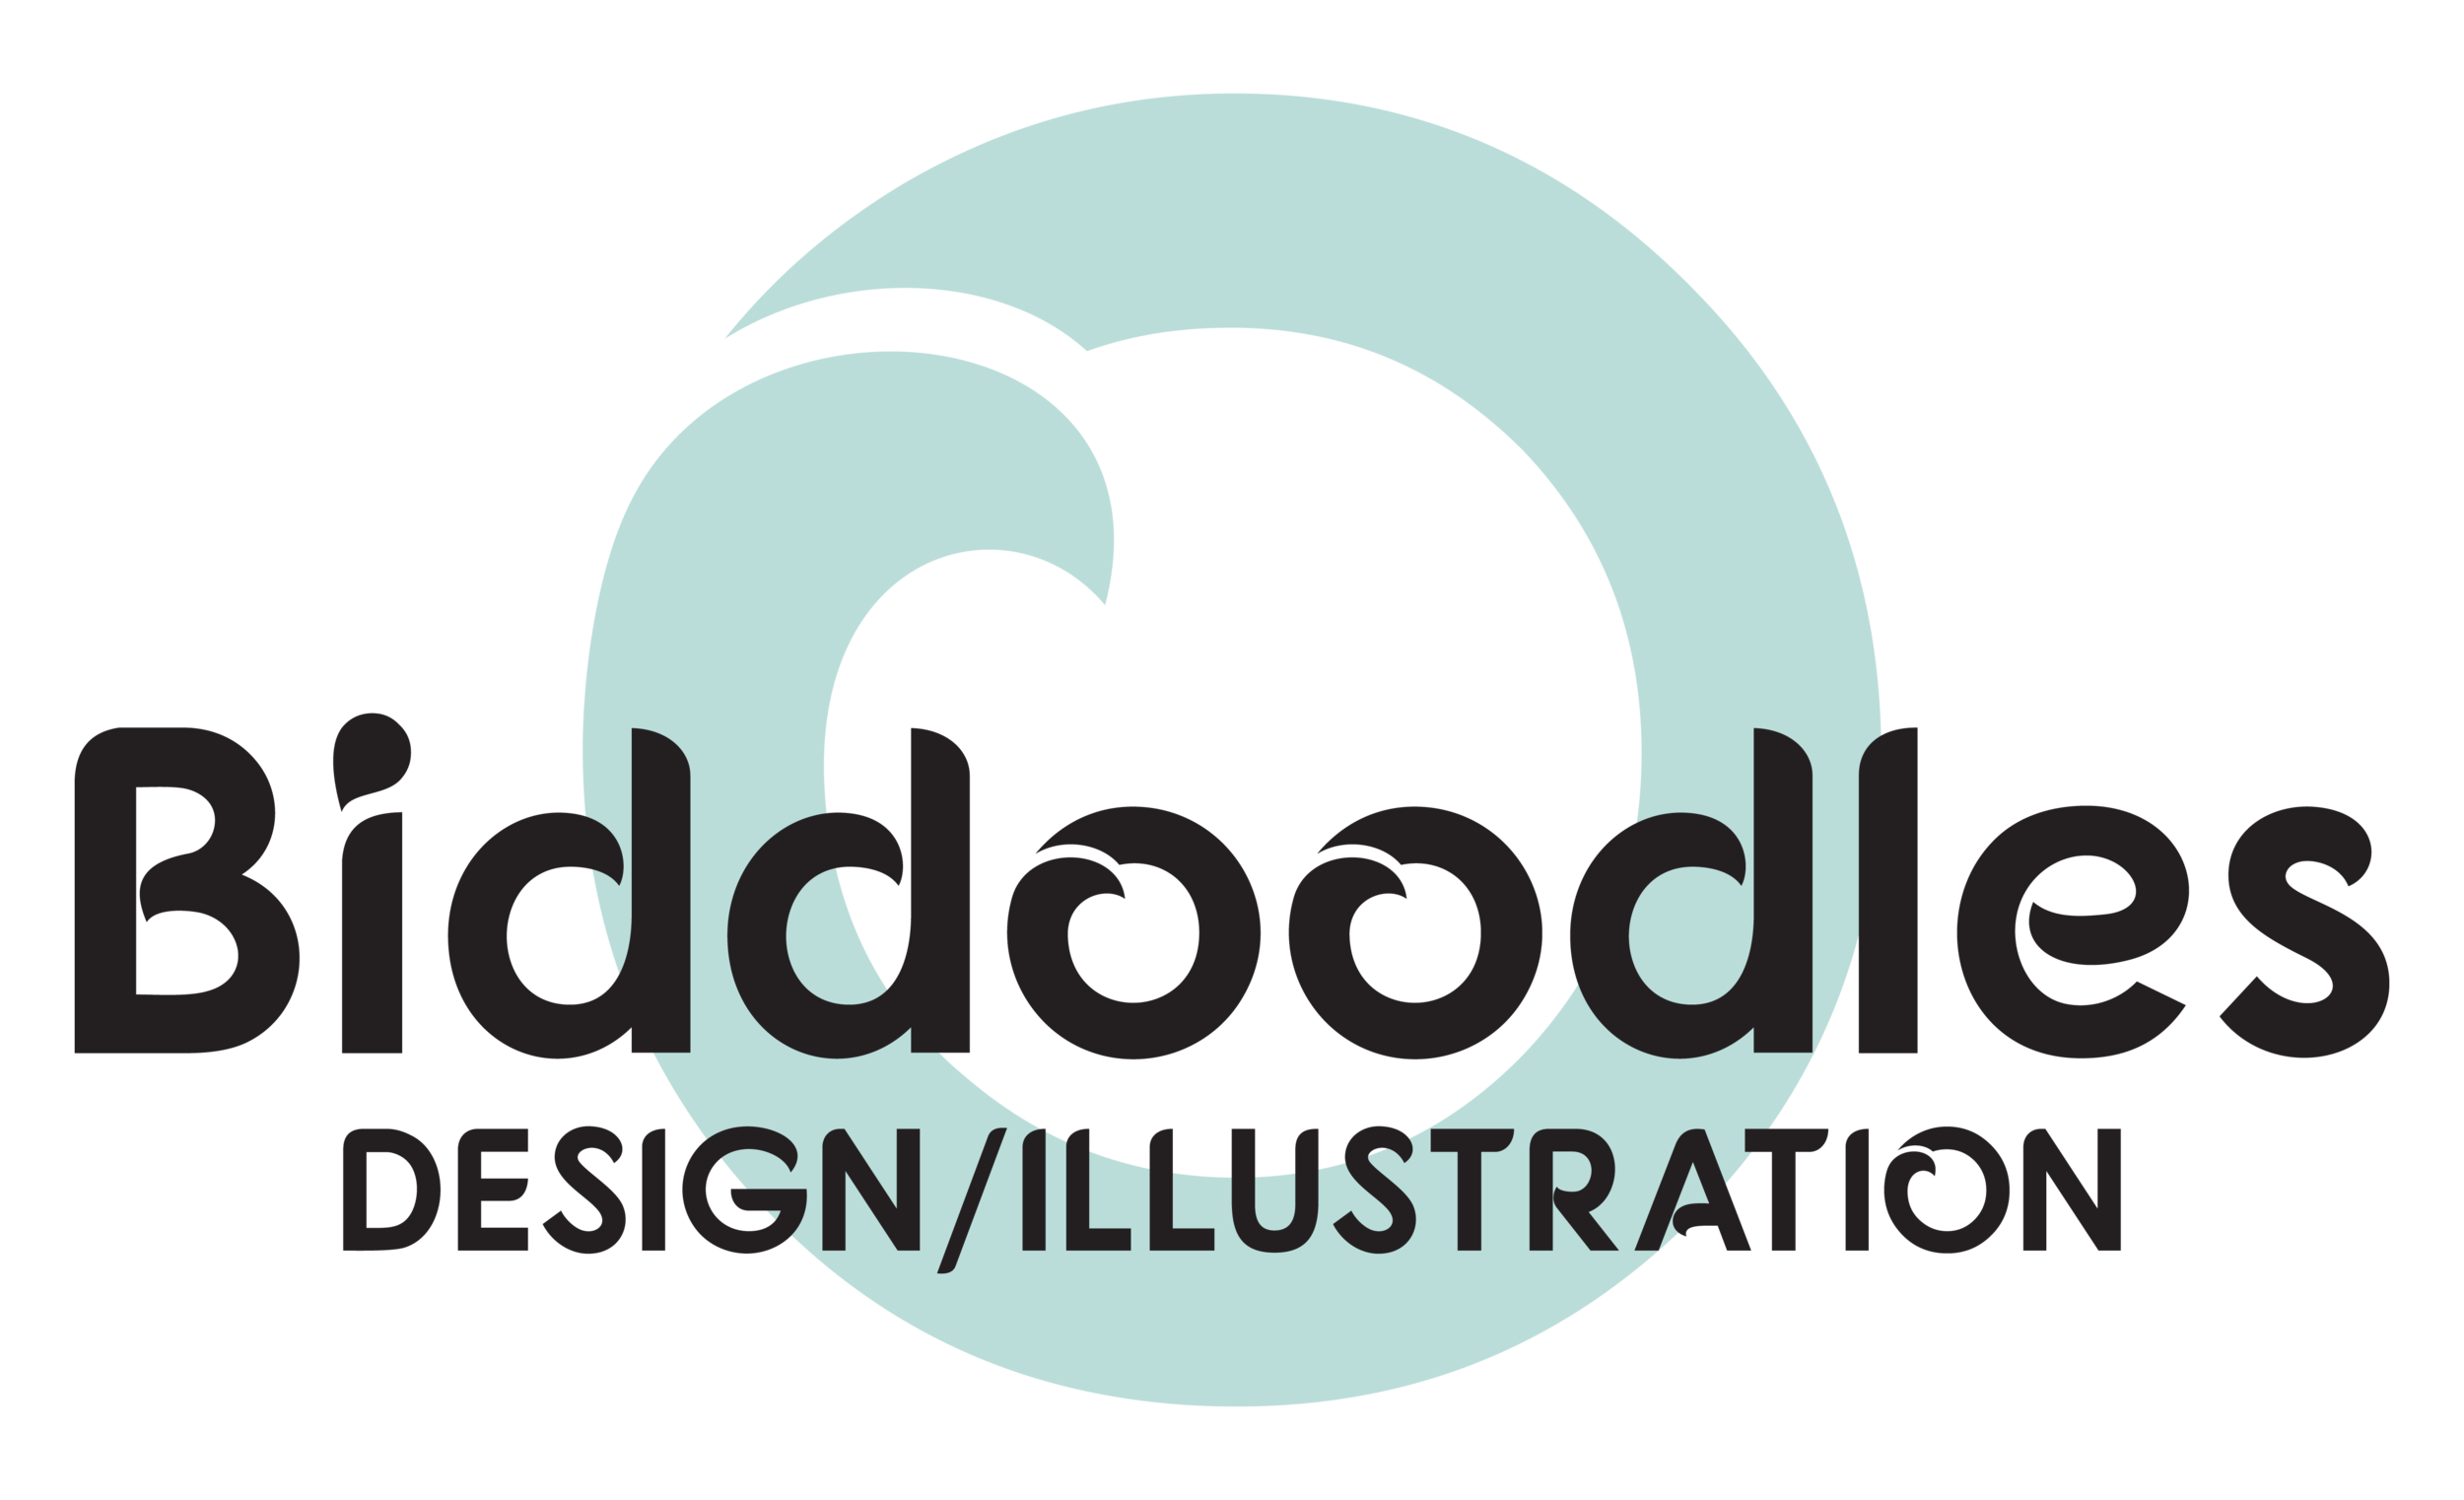 Biddoodles Logo-transparent - Biddy Seiveno.png